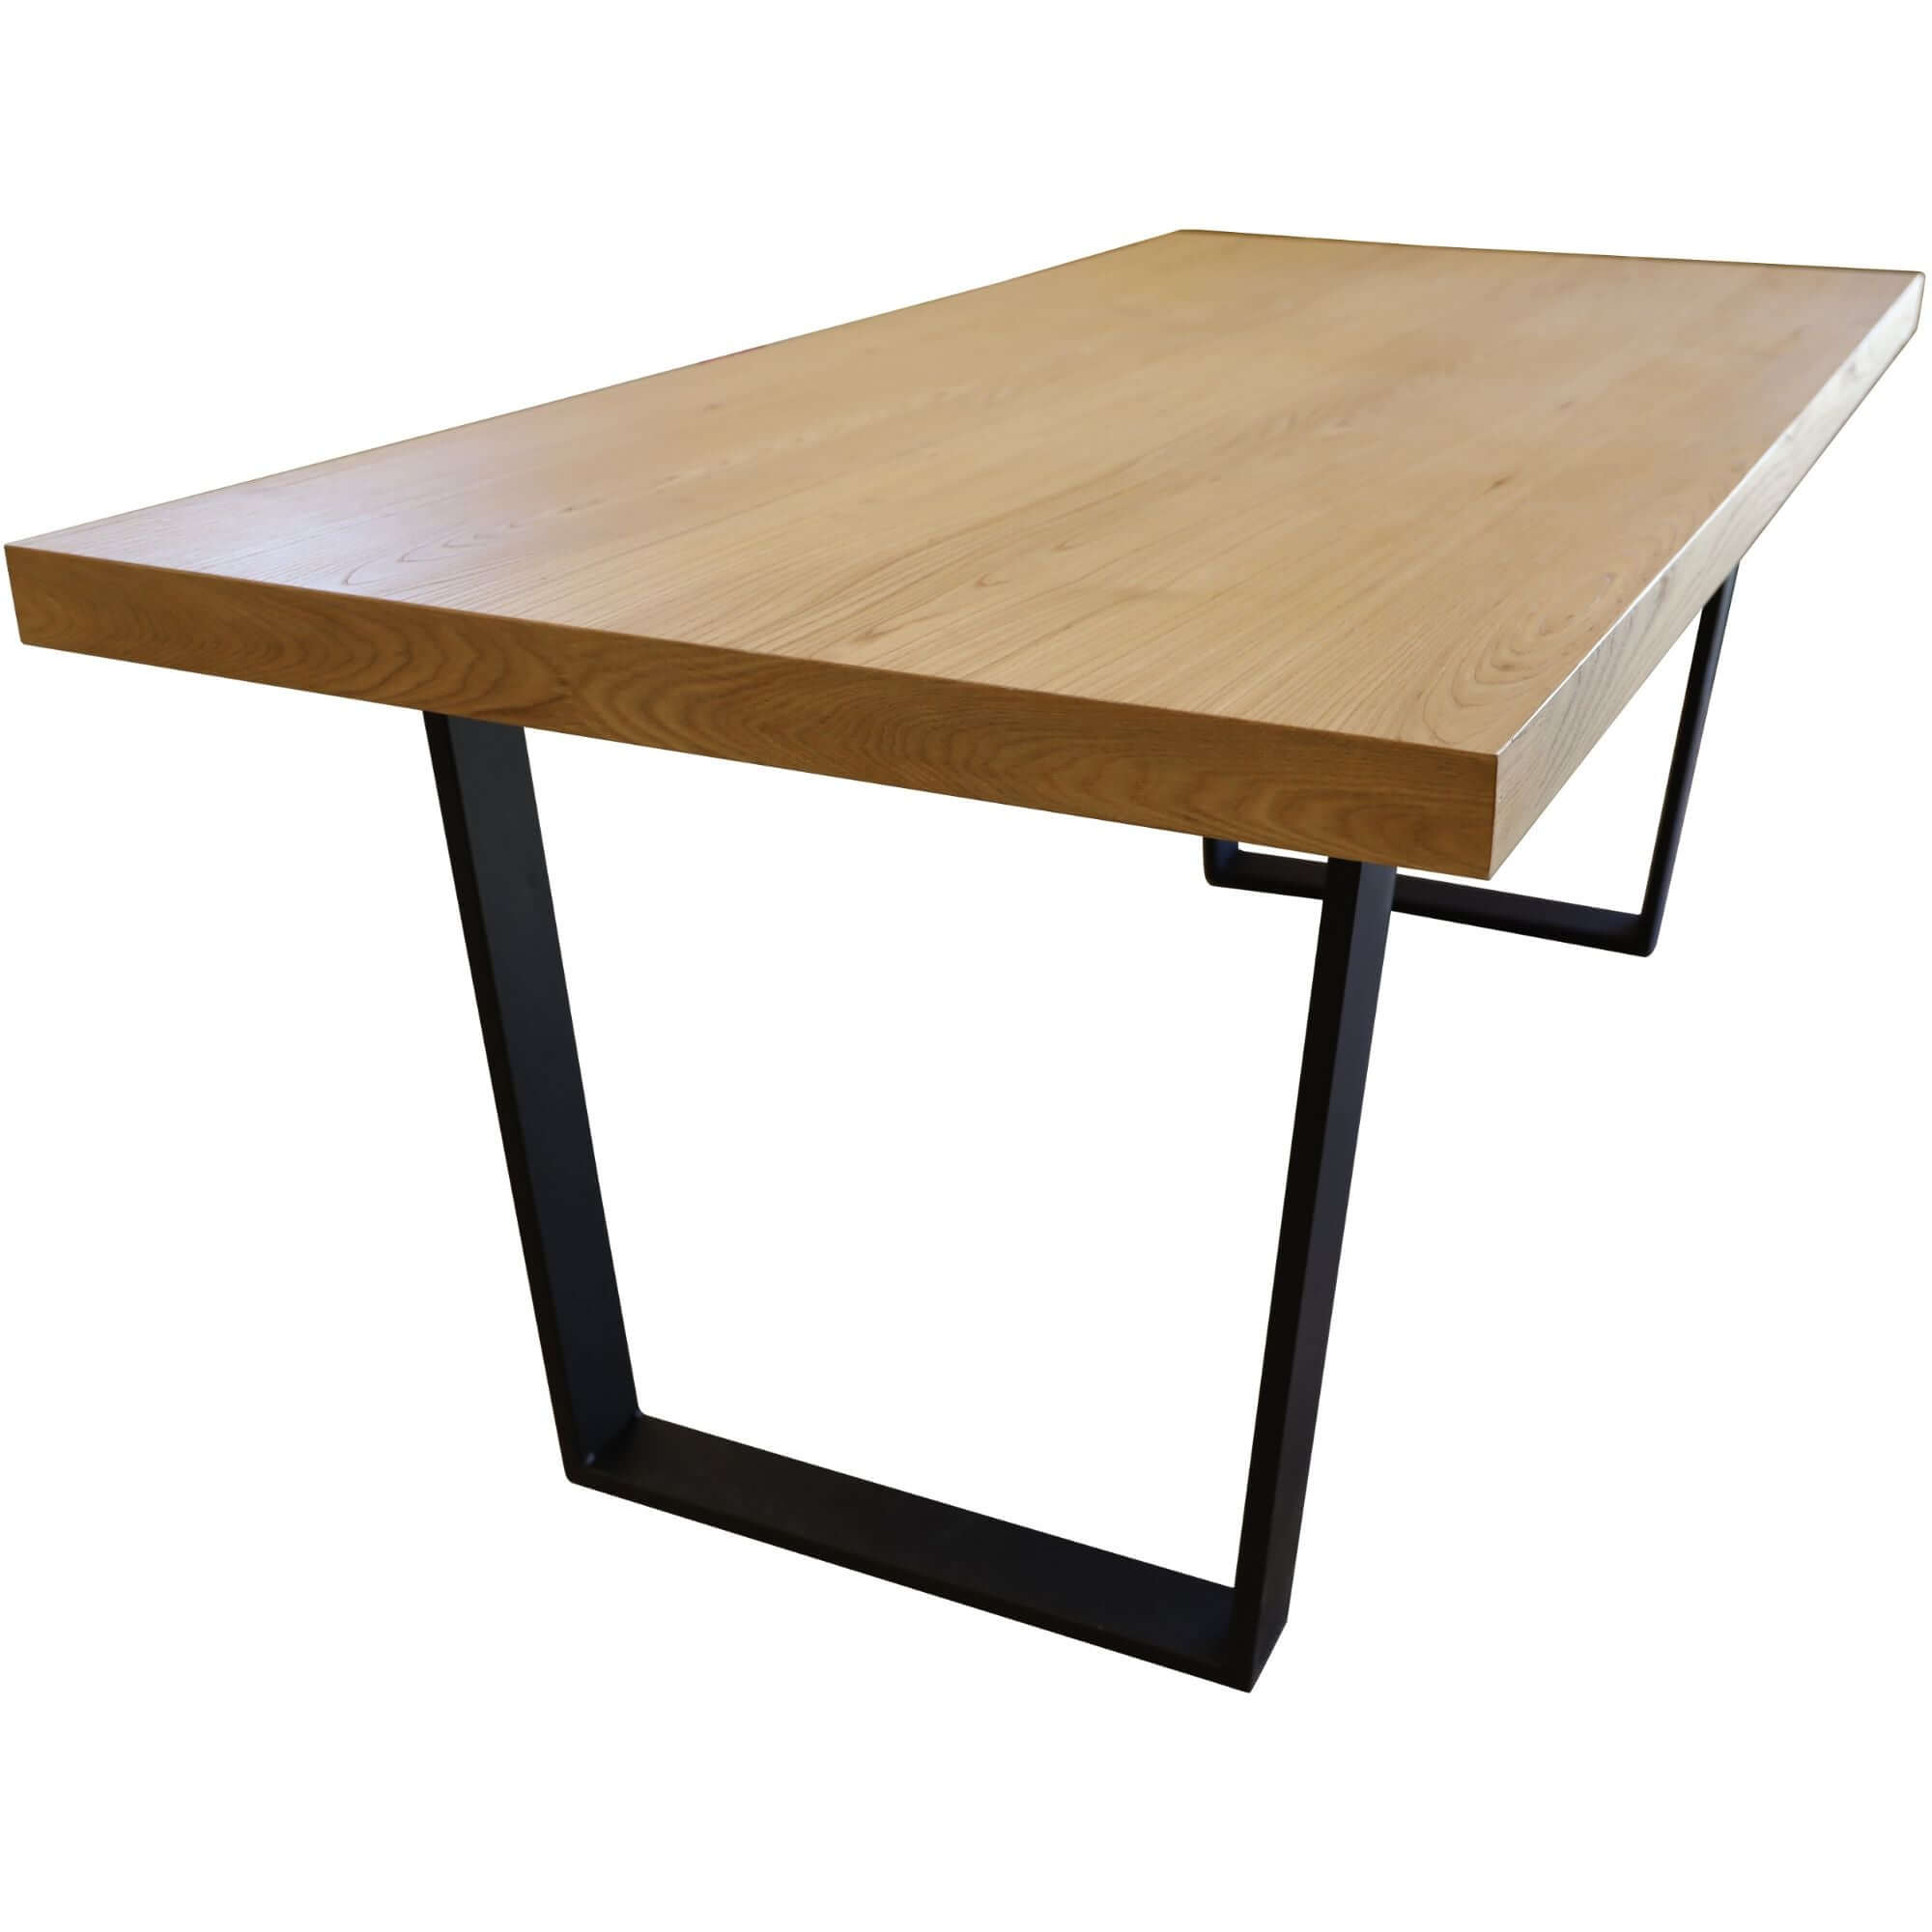 Petunia Dining Table 210cm Elm Timber Wood Black Metal Leg - Natural-Upinteriors